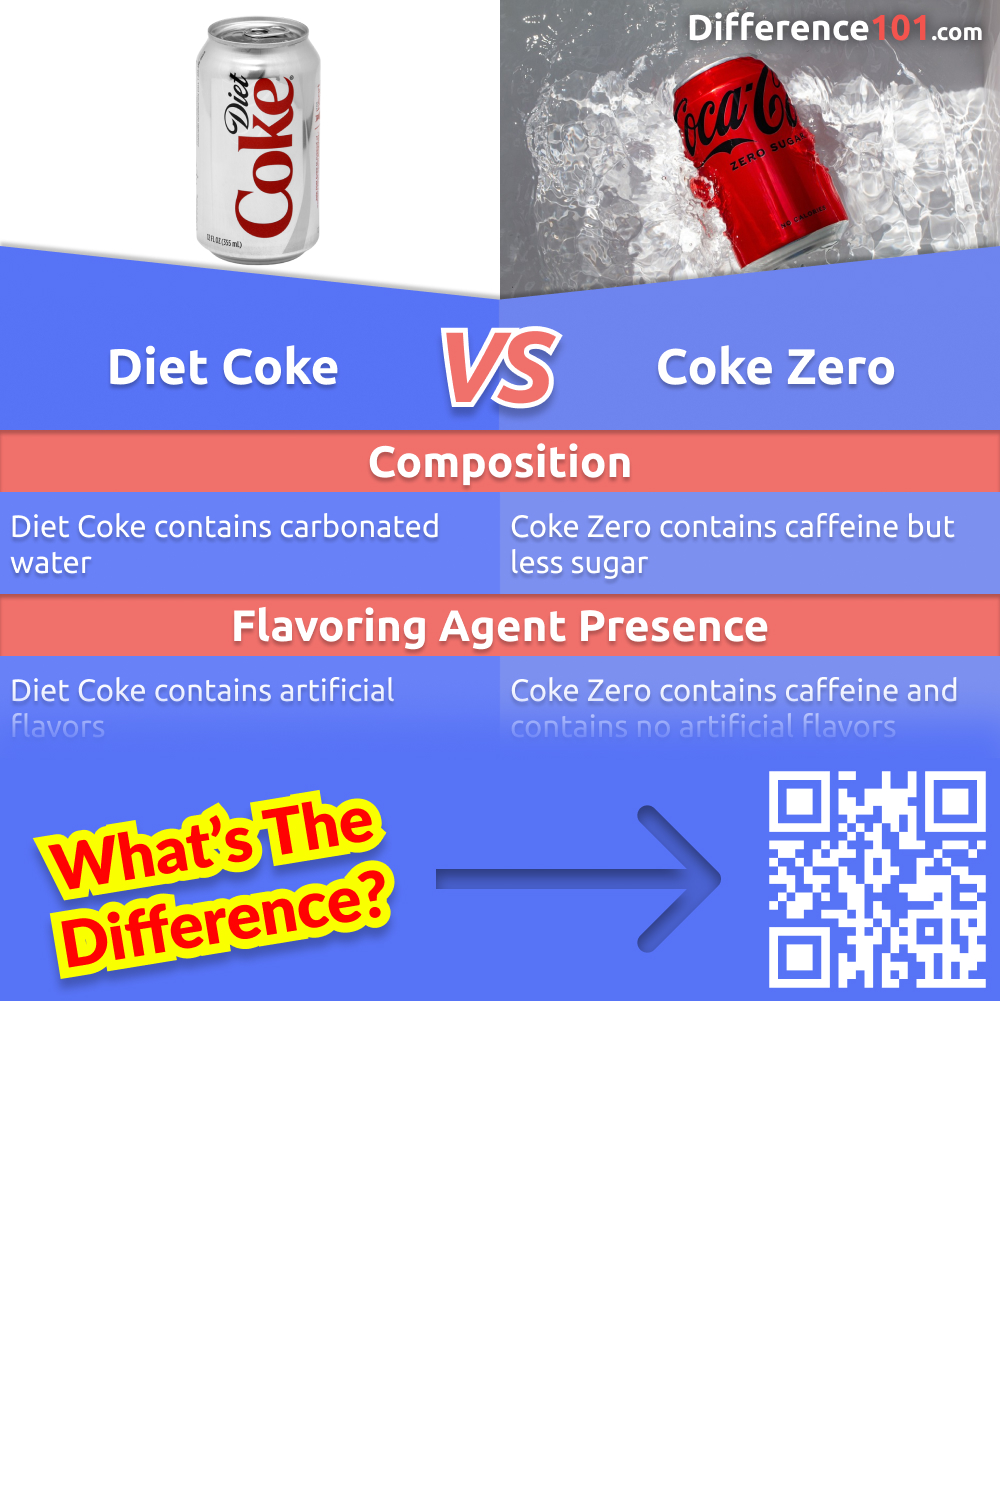 Diet Coke e Coke Zero são dois dos refrigerantes sem açúcar mais populares. Mas quais são as diferenças entre eles? Este artigo irá comparar as duas bebidas, olhando para seus prós e contras. Leia mais aqui.